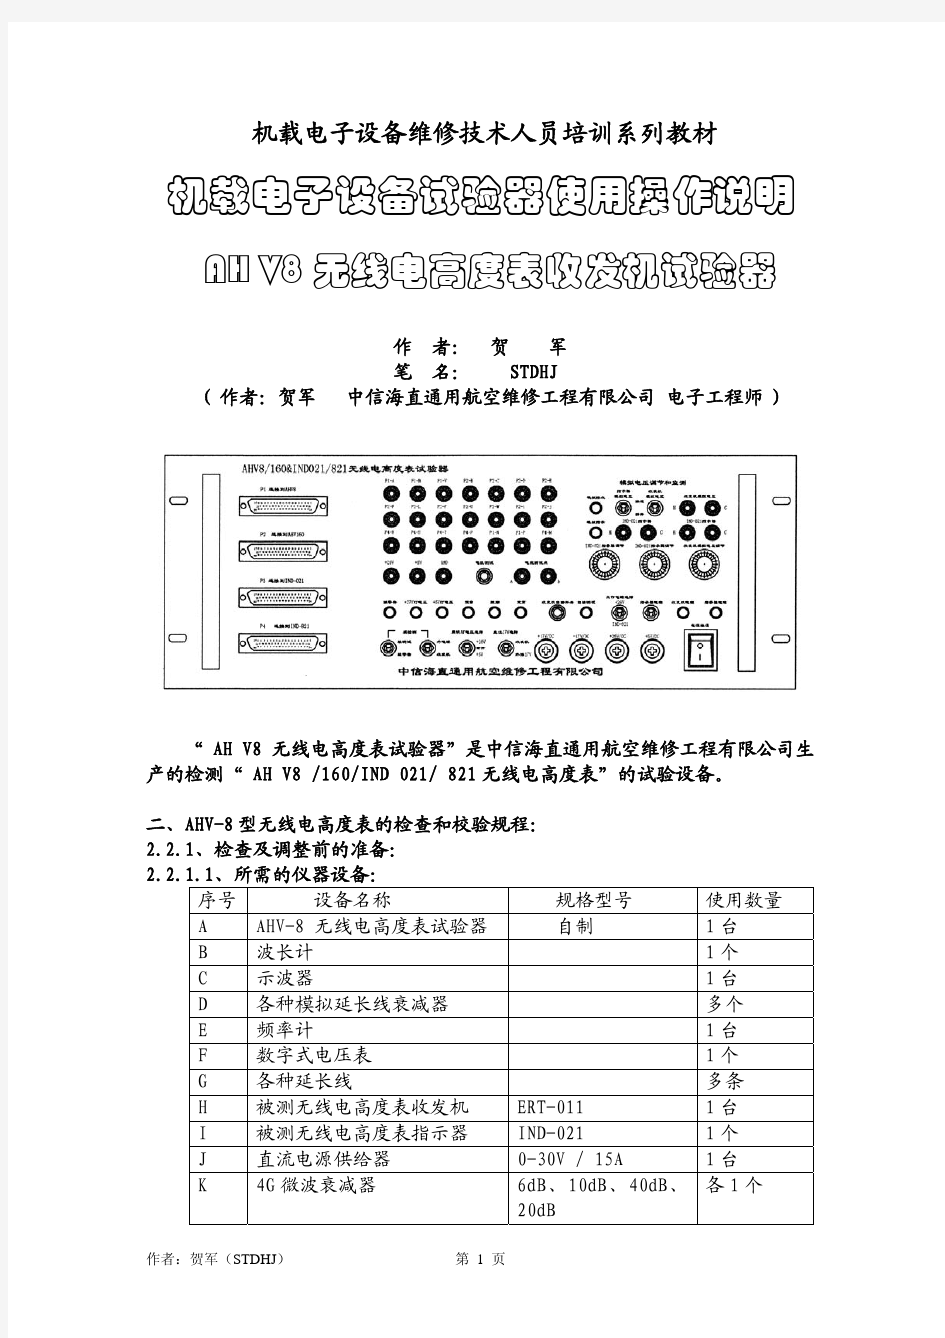 AH V8 无线电高度表试验器使用说明